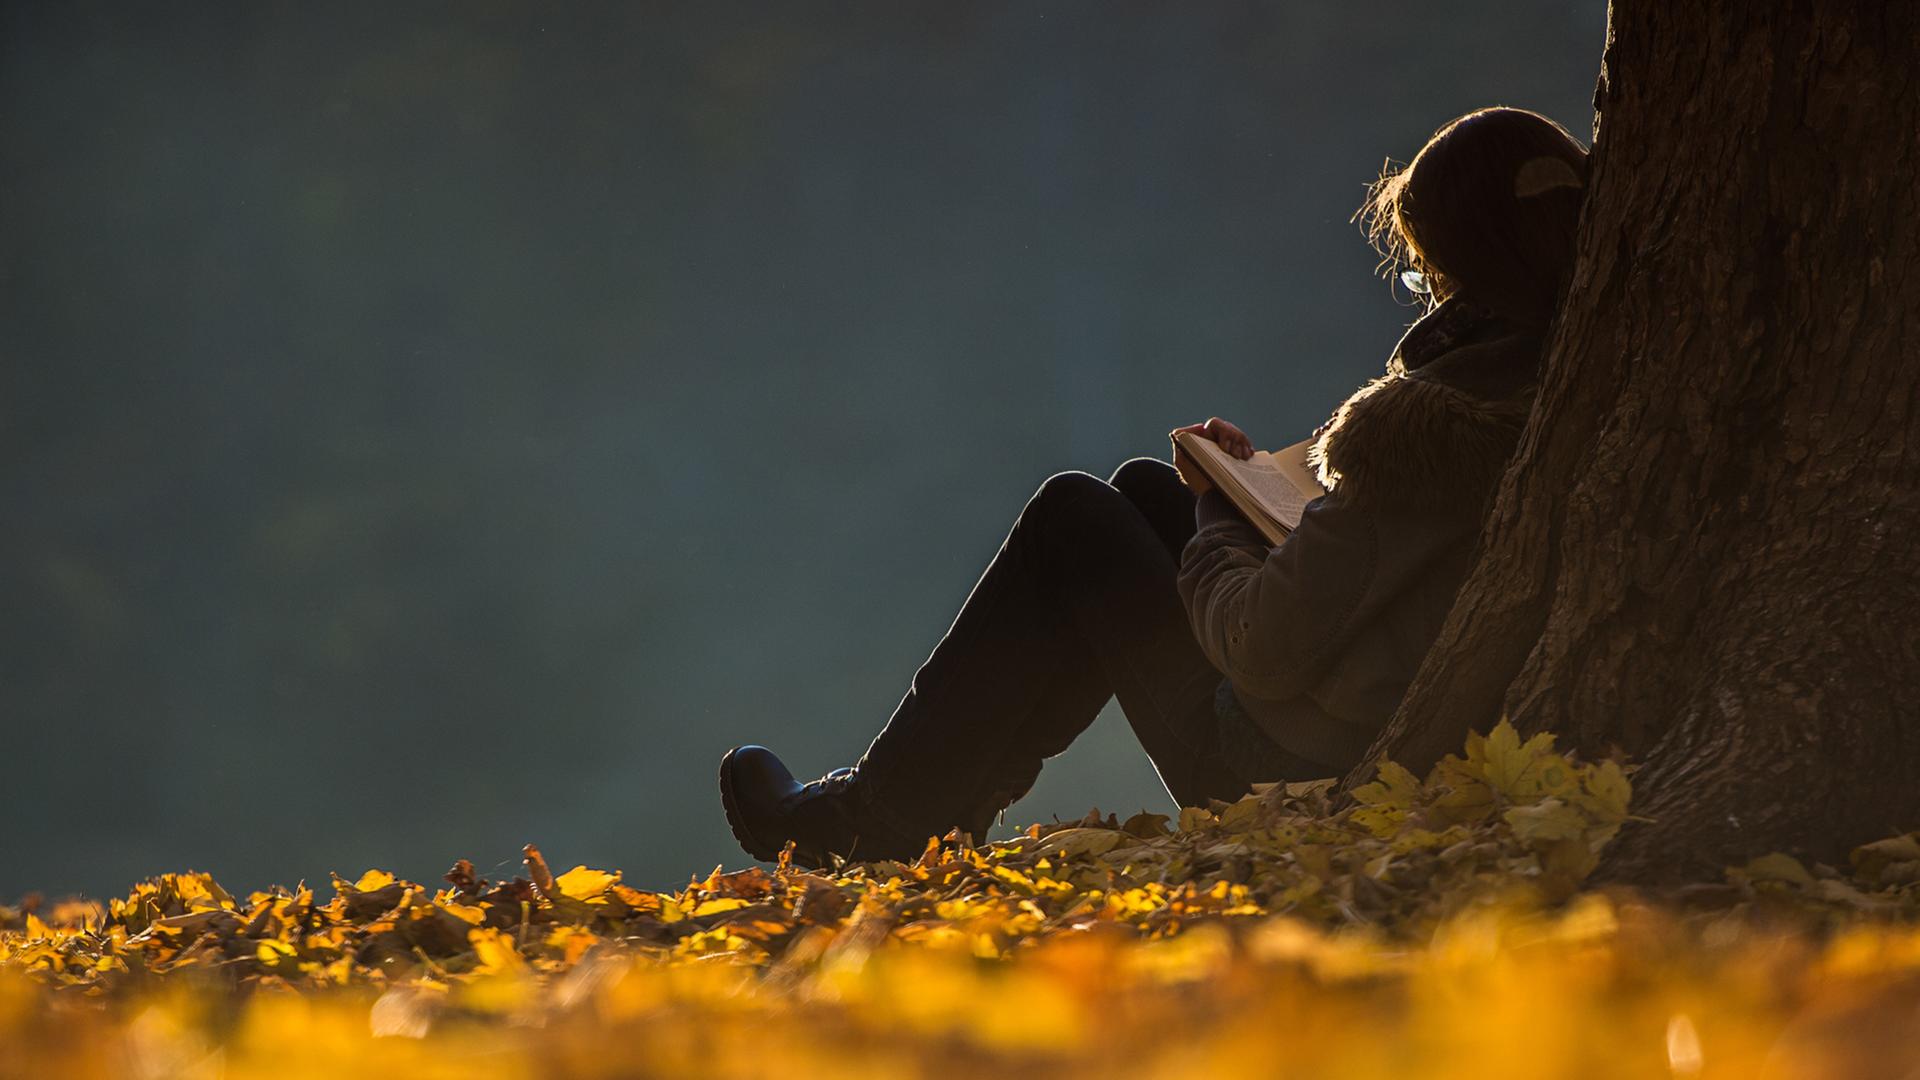 Eine Frau lehnt sitzend an einem Baum und liest ein Buch, Herbstblätter liegen auf dem Boden.